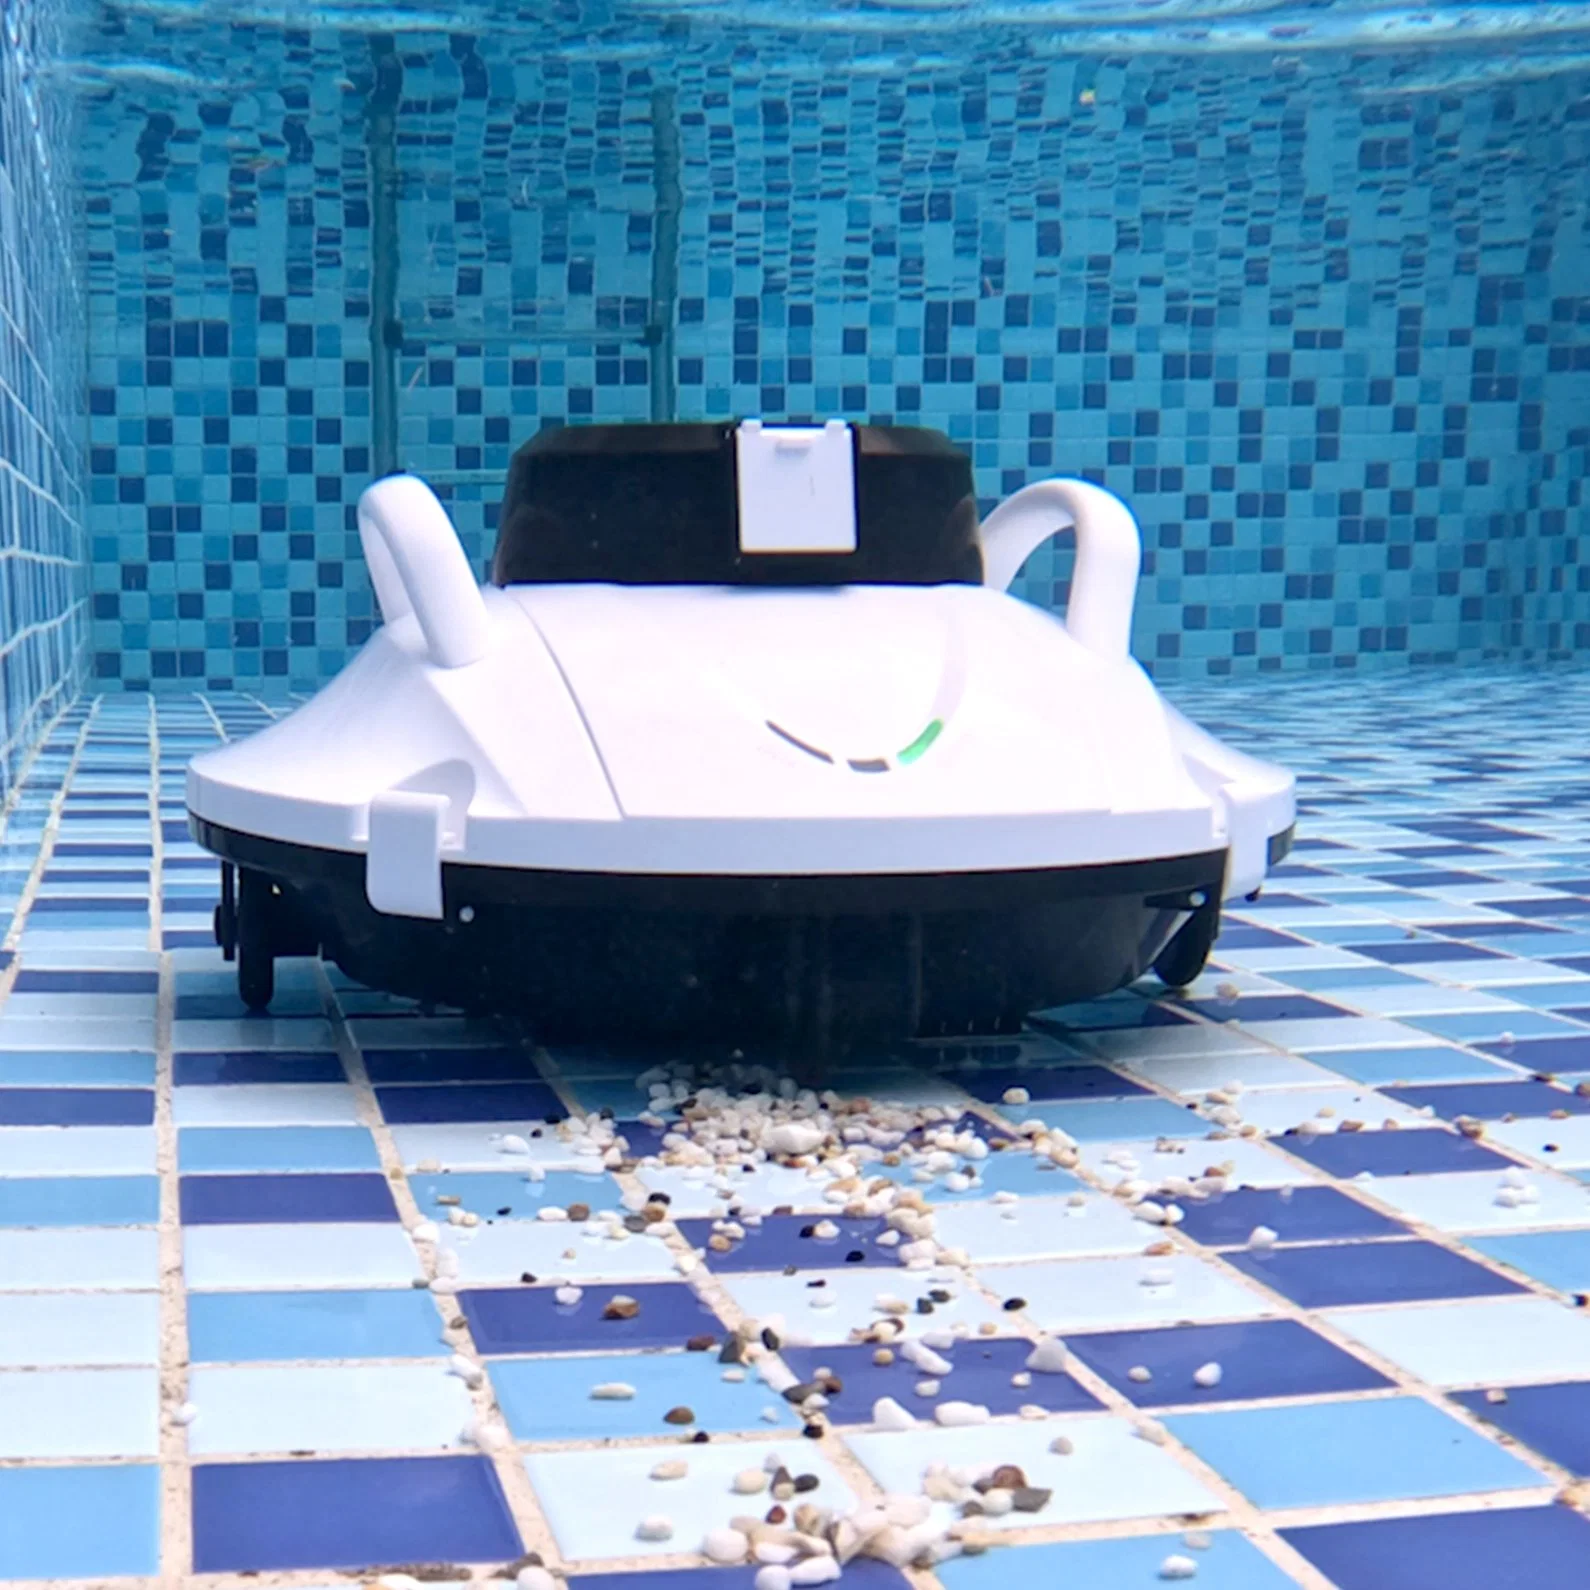 Fabricante Subaquático Robotic sem fios líquido de limpeza automático para piscinas Ferramenta Jogos de água Jet Skis água limpa Robot Mop Pool Aspirador